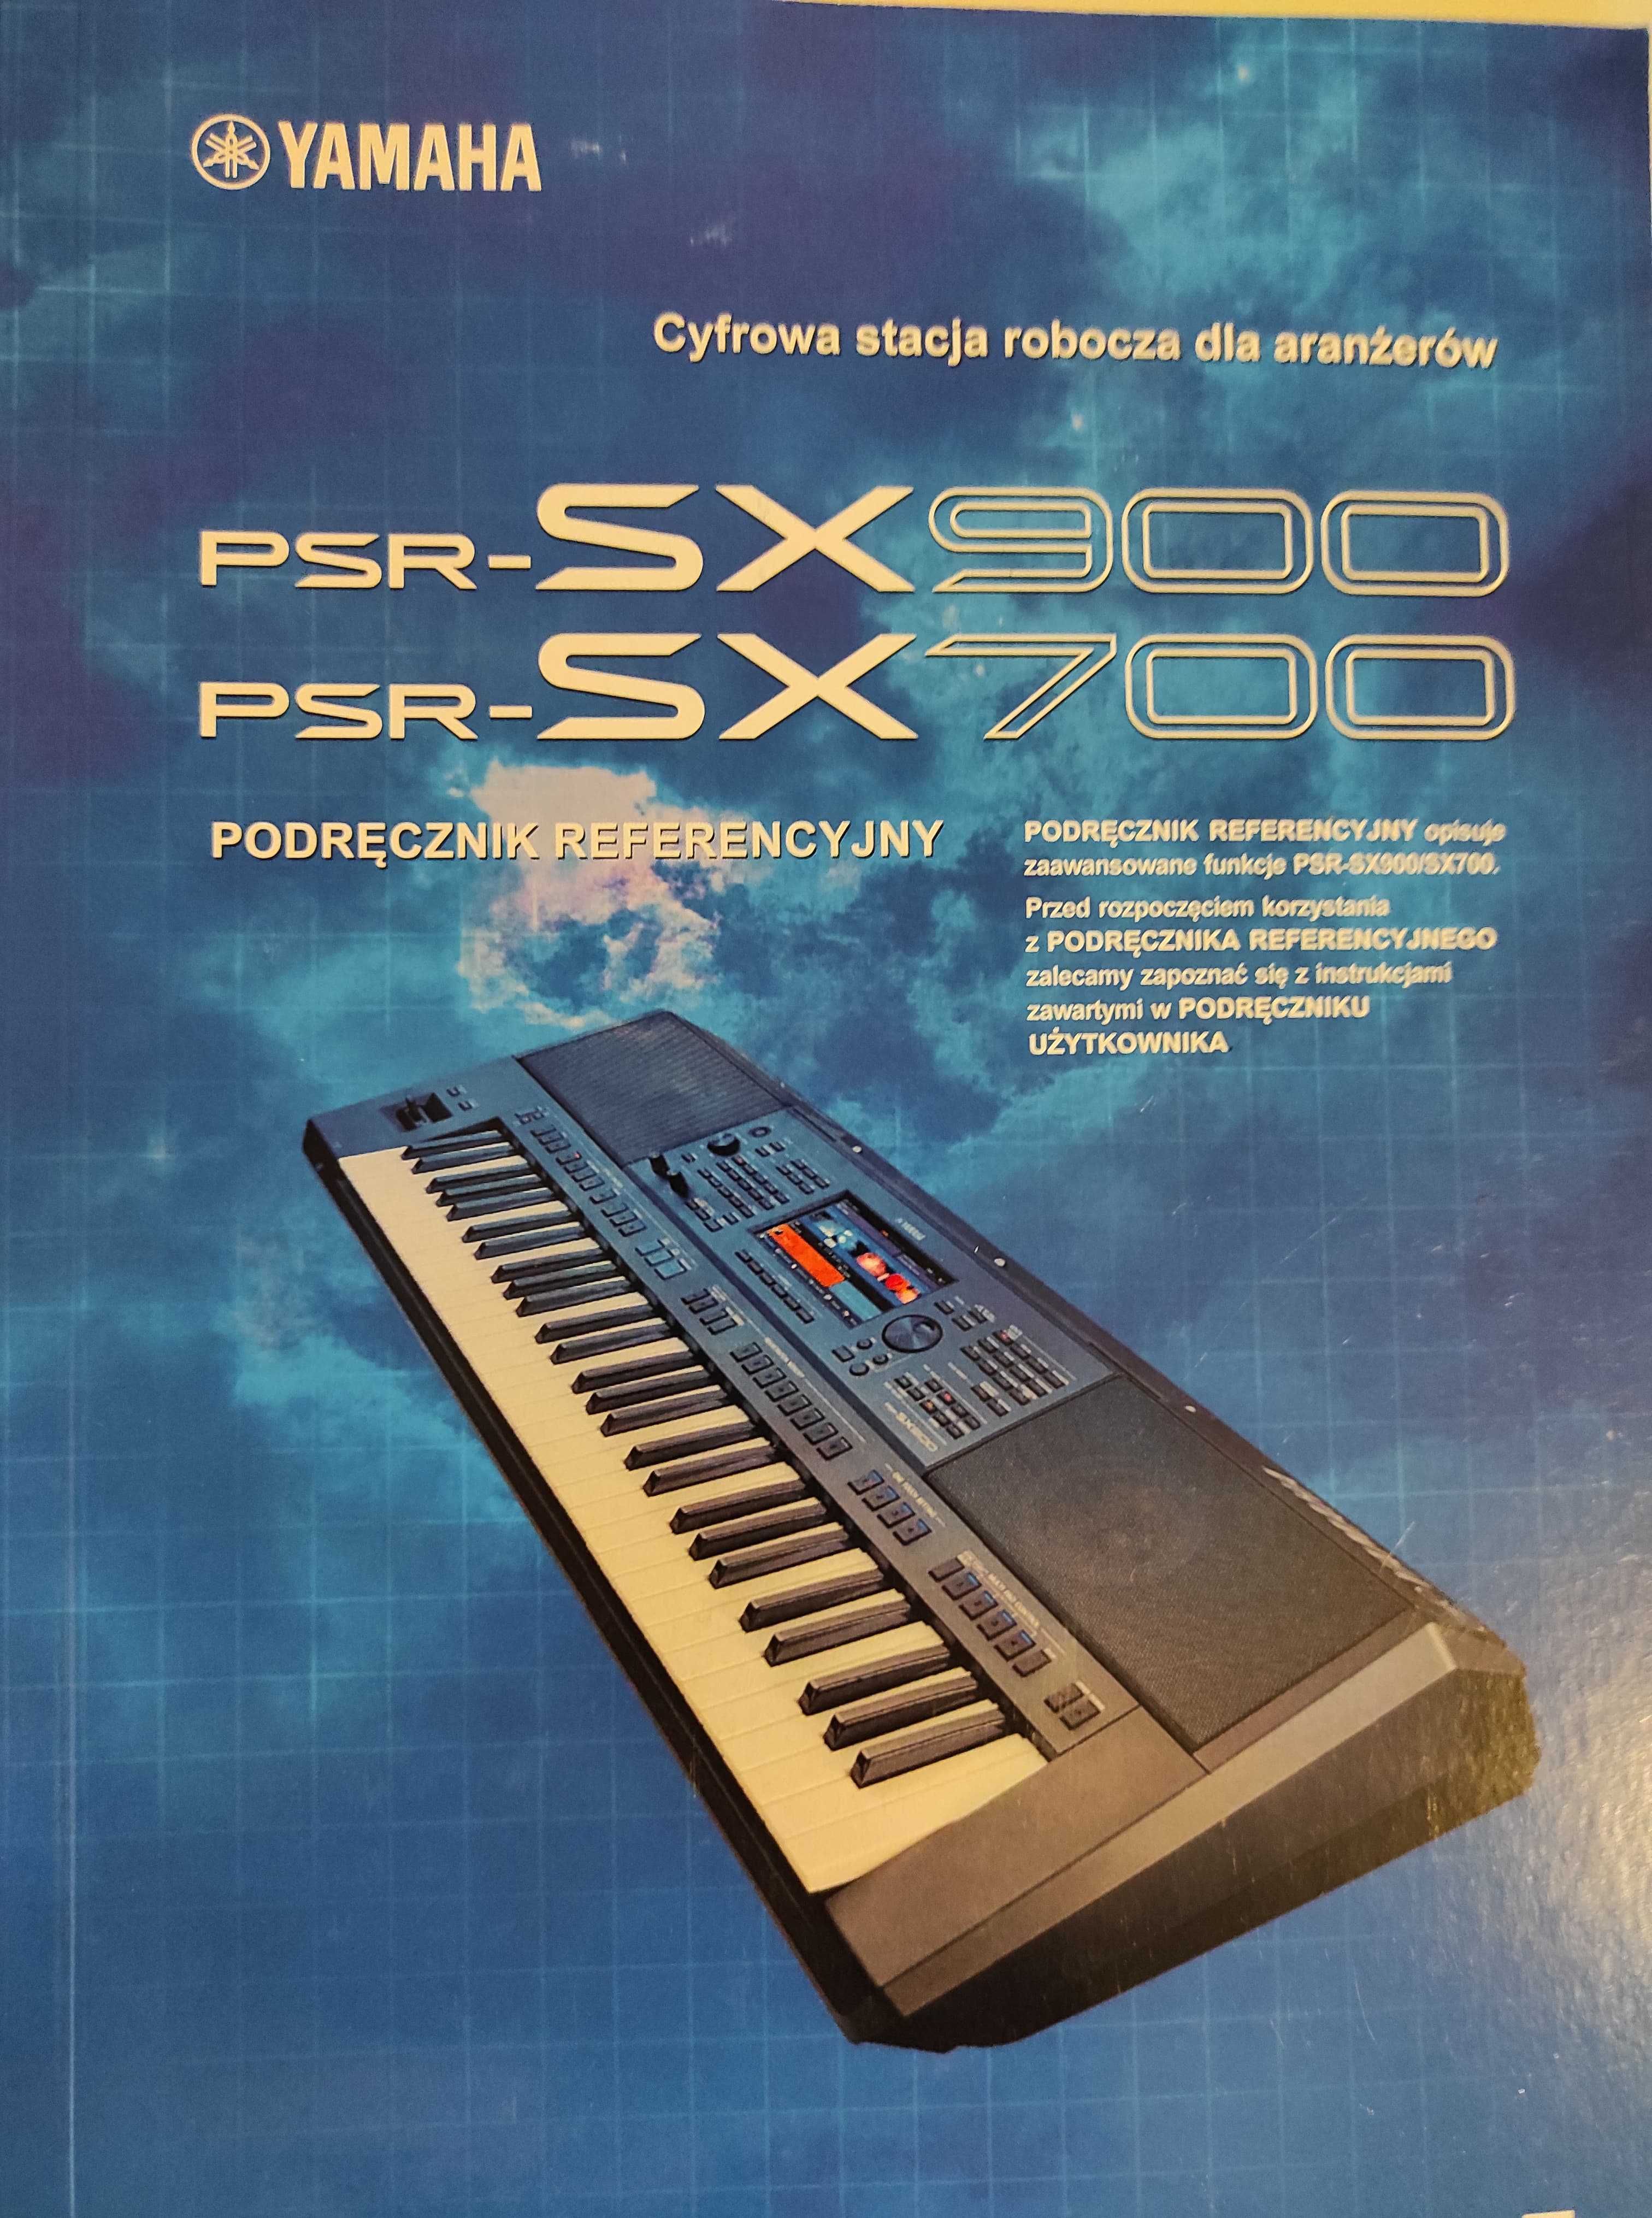 Yamaha PSR-SX700 900 - Instrukcja Obsługi Referencyjna Zaawansowana